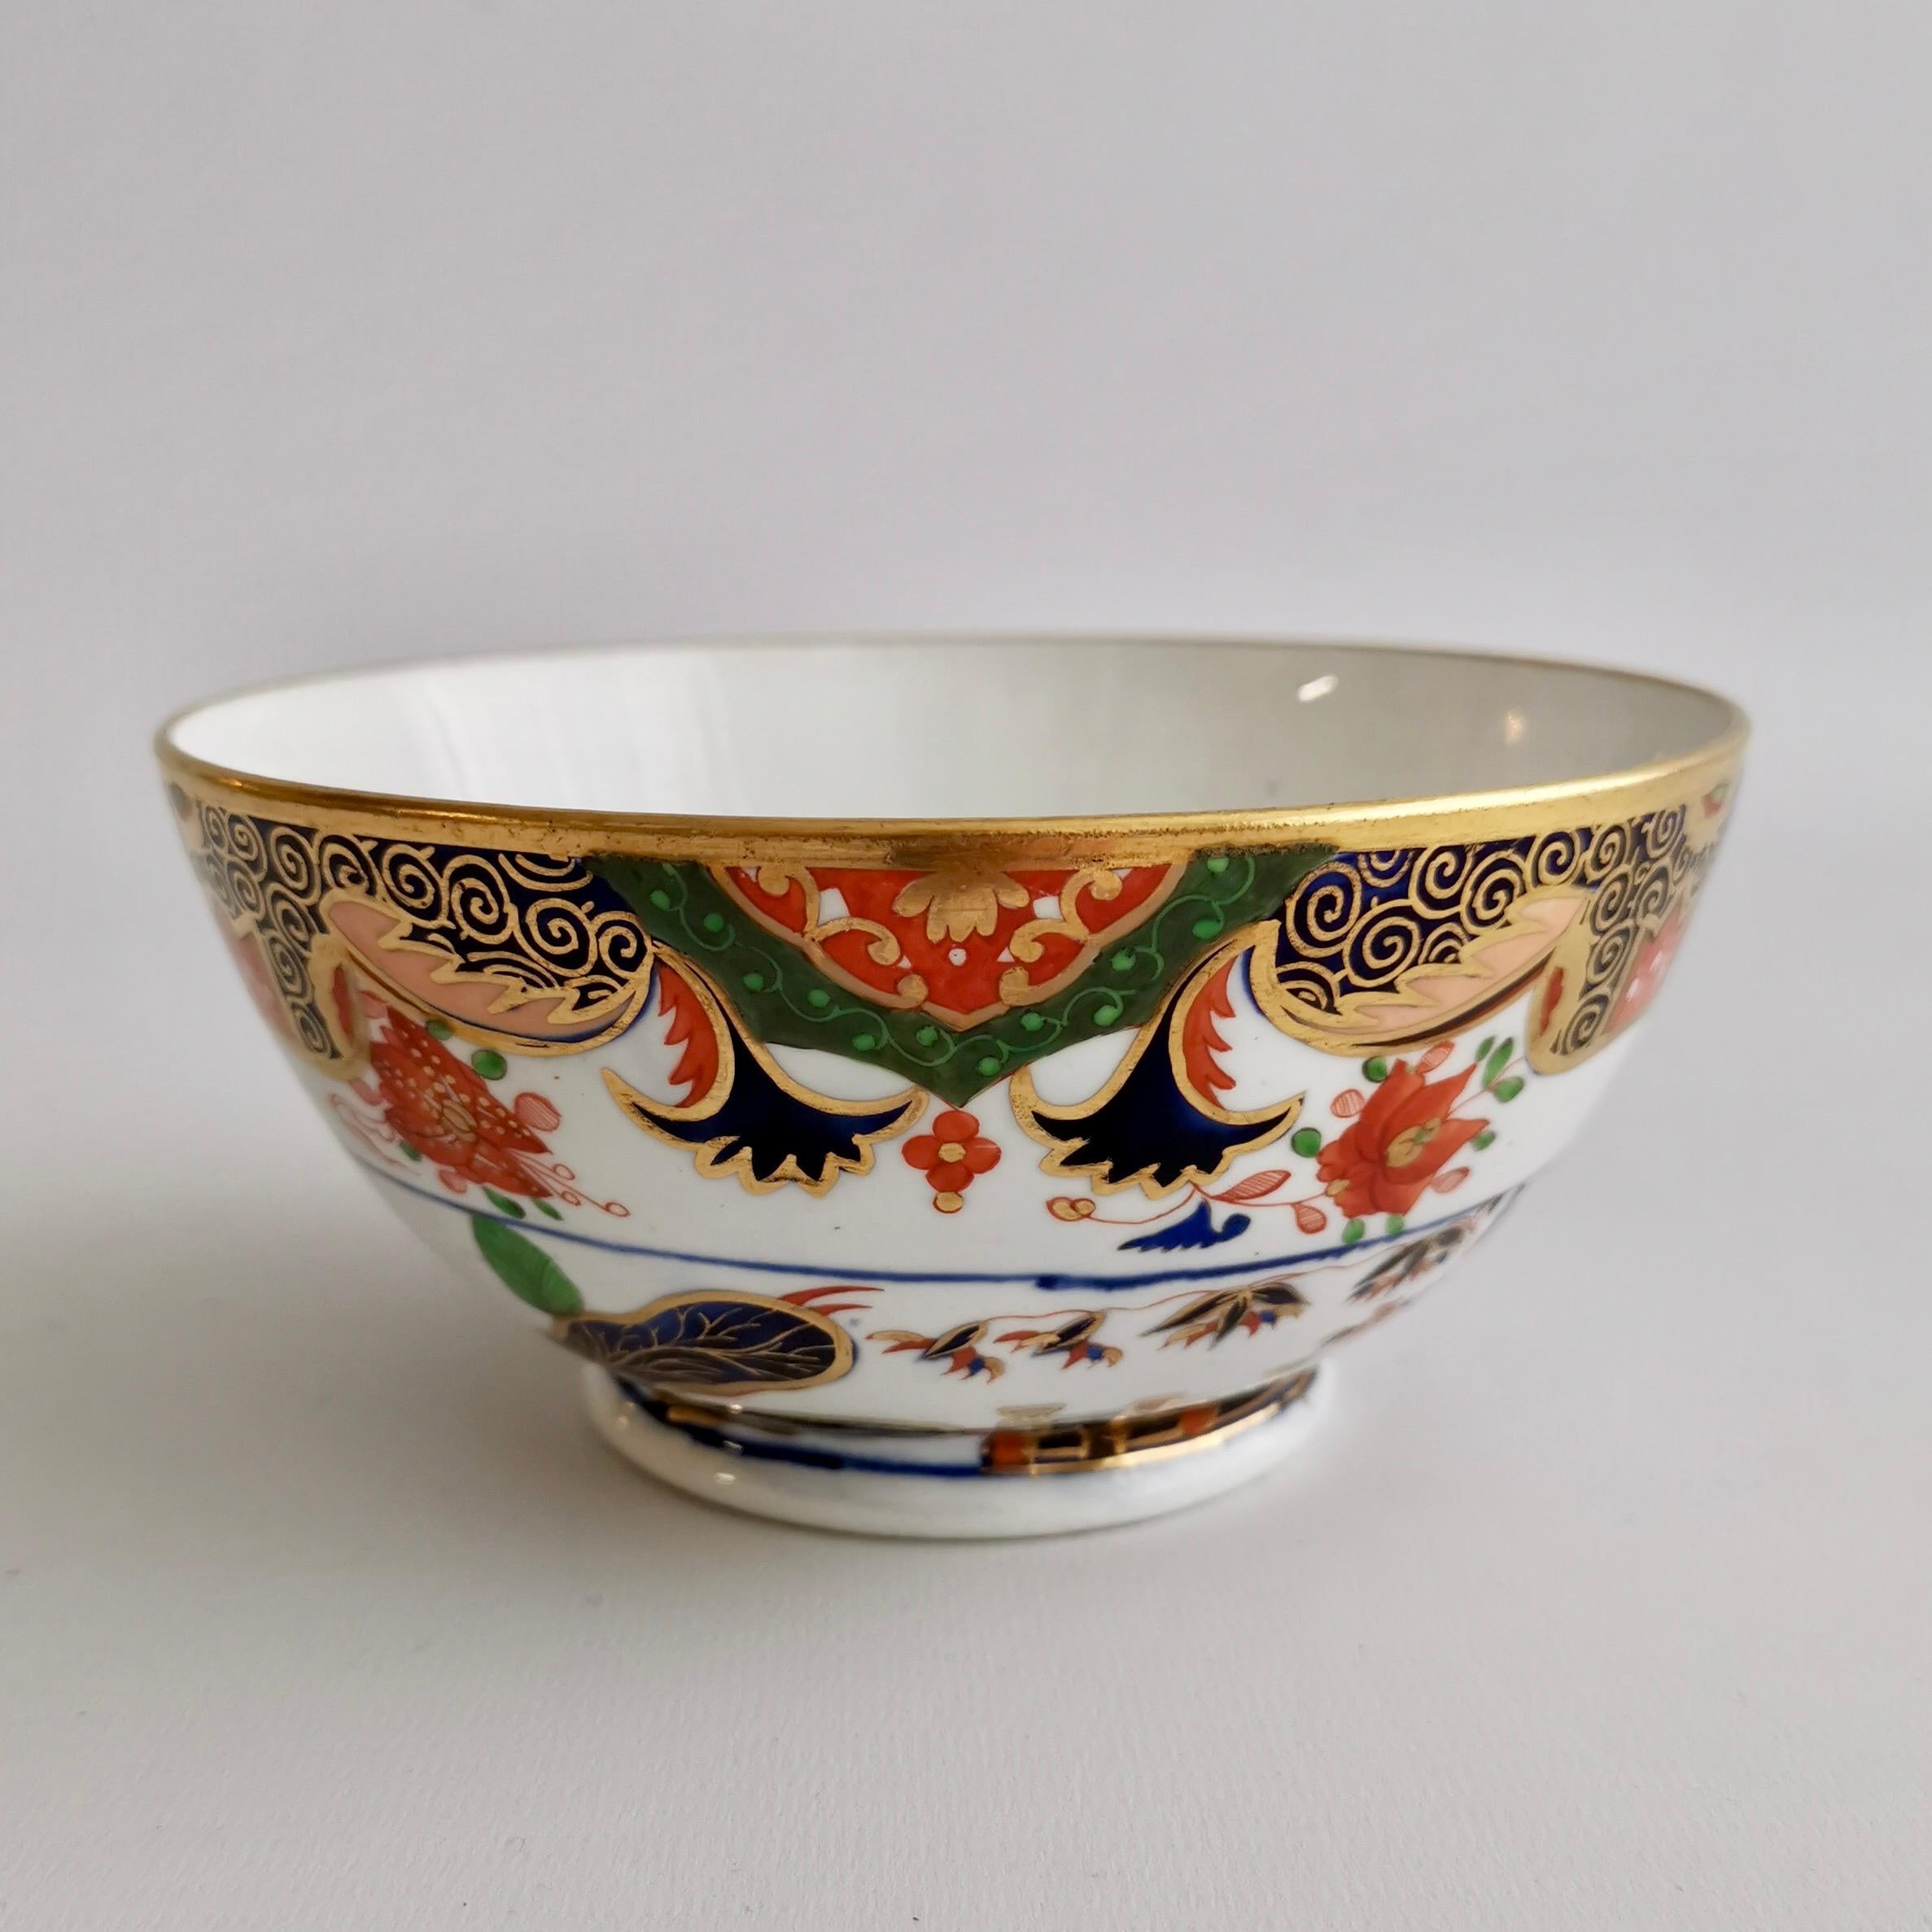 Regency Spode Porcelain Bowl, Imari Tobacco Leaf Pattern 967, ca 1815